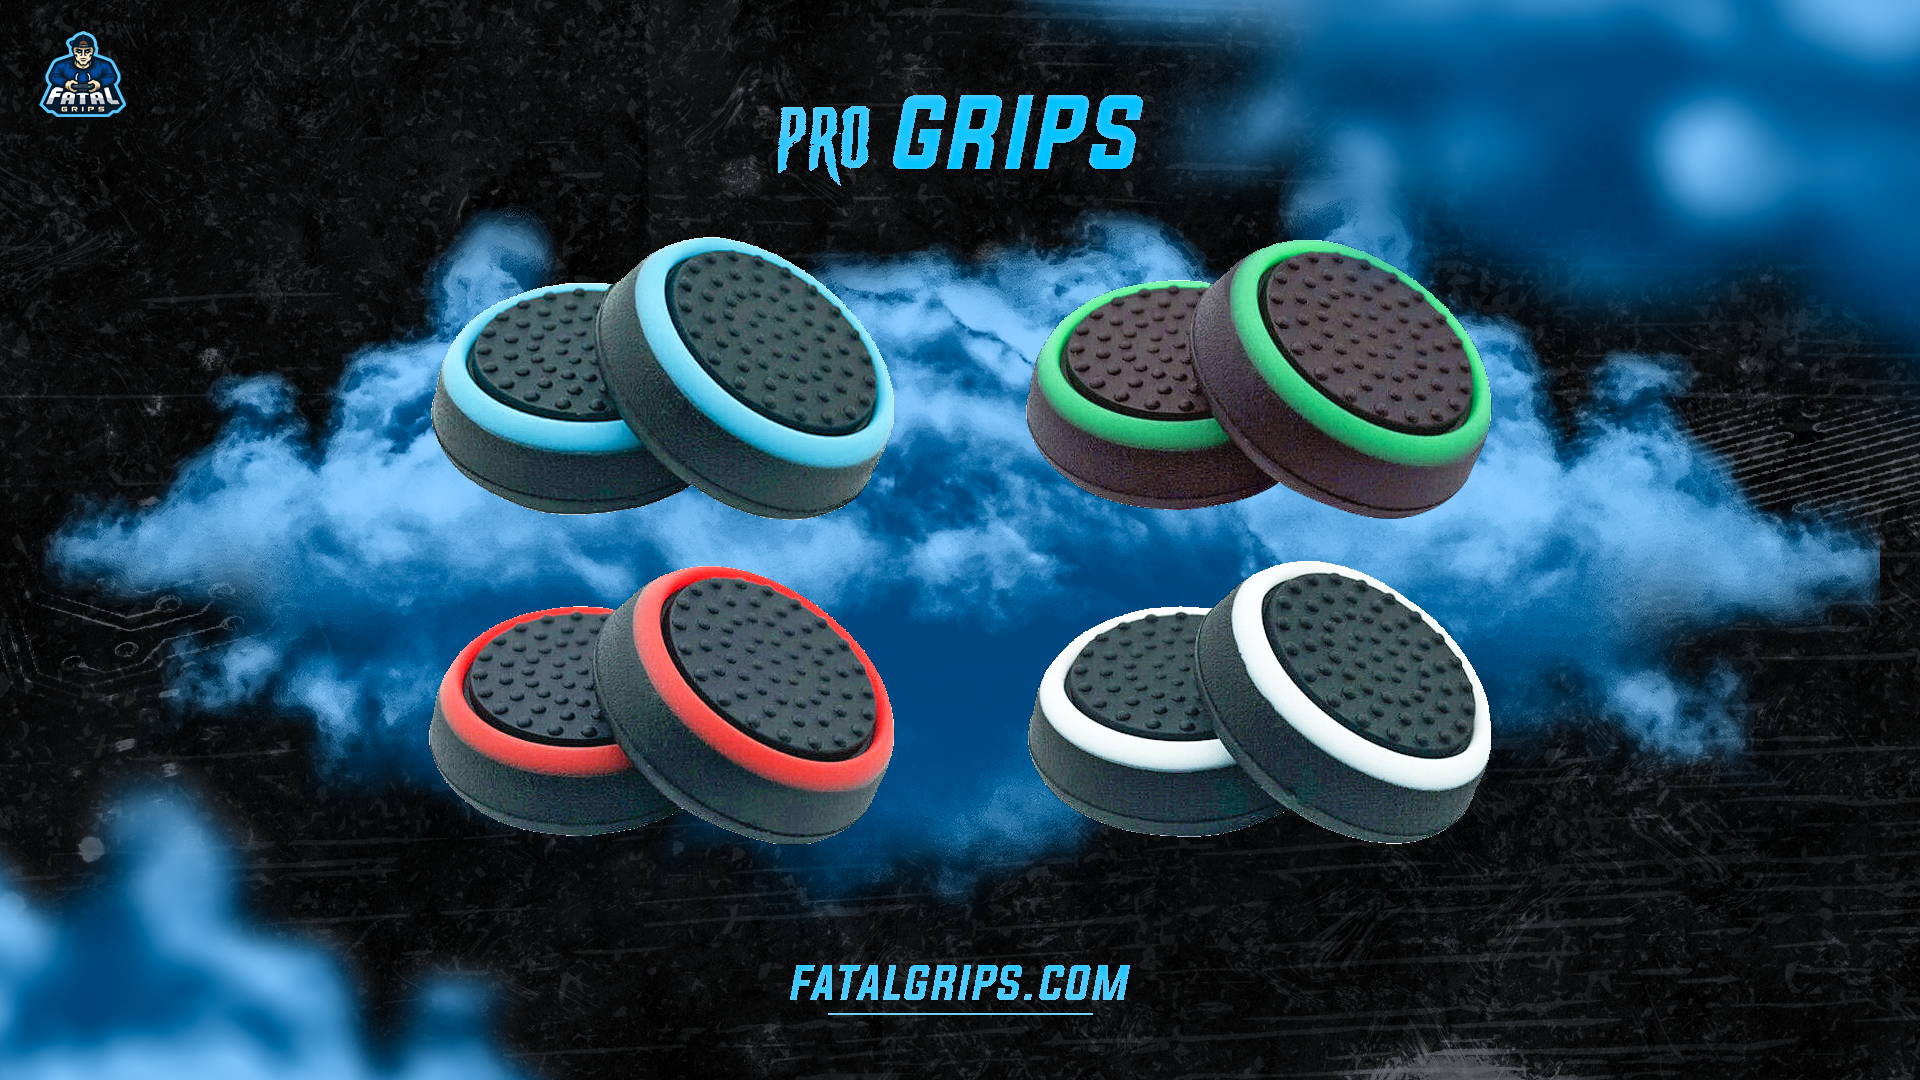 Pro Grips - Fatal Grips